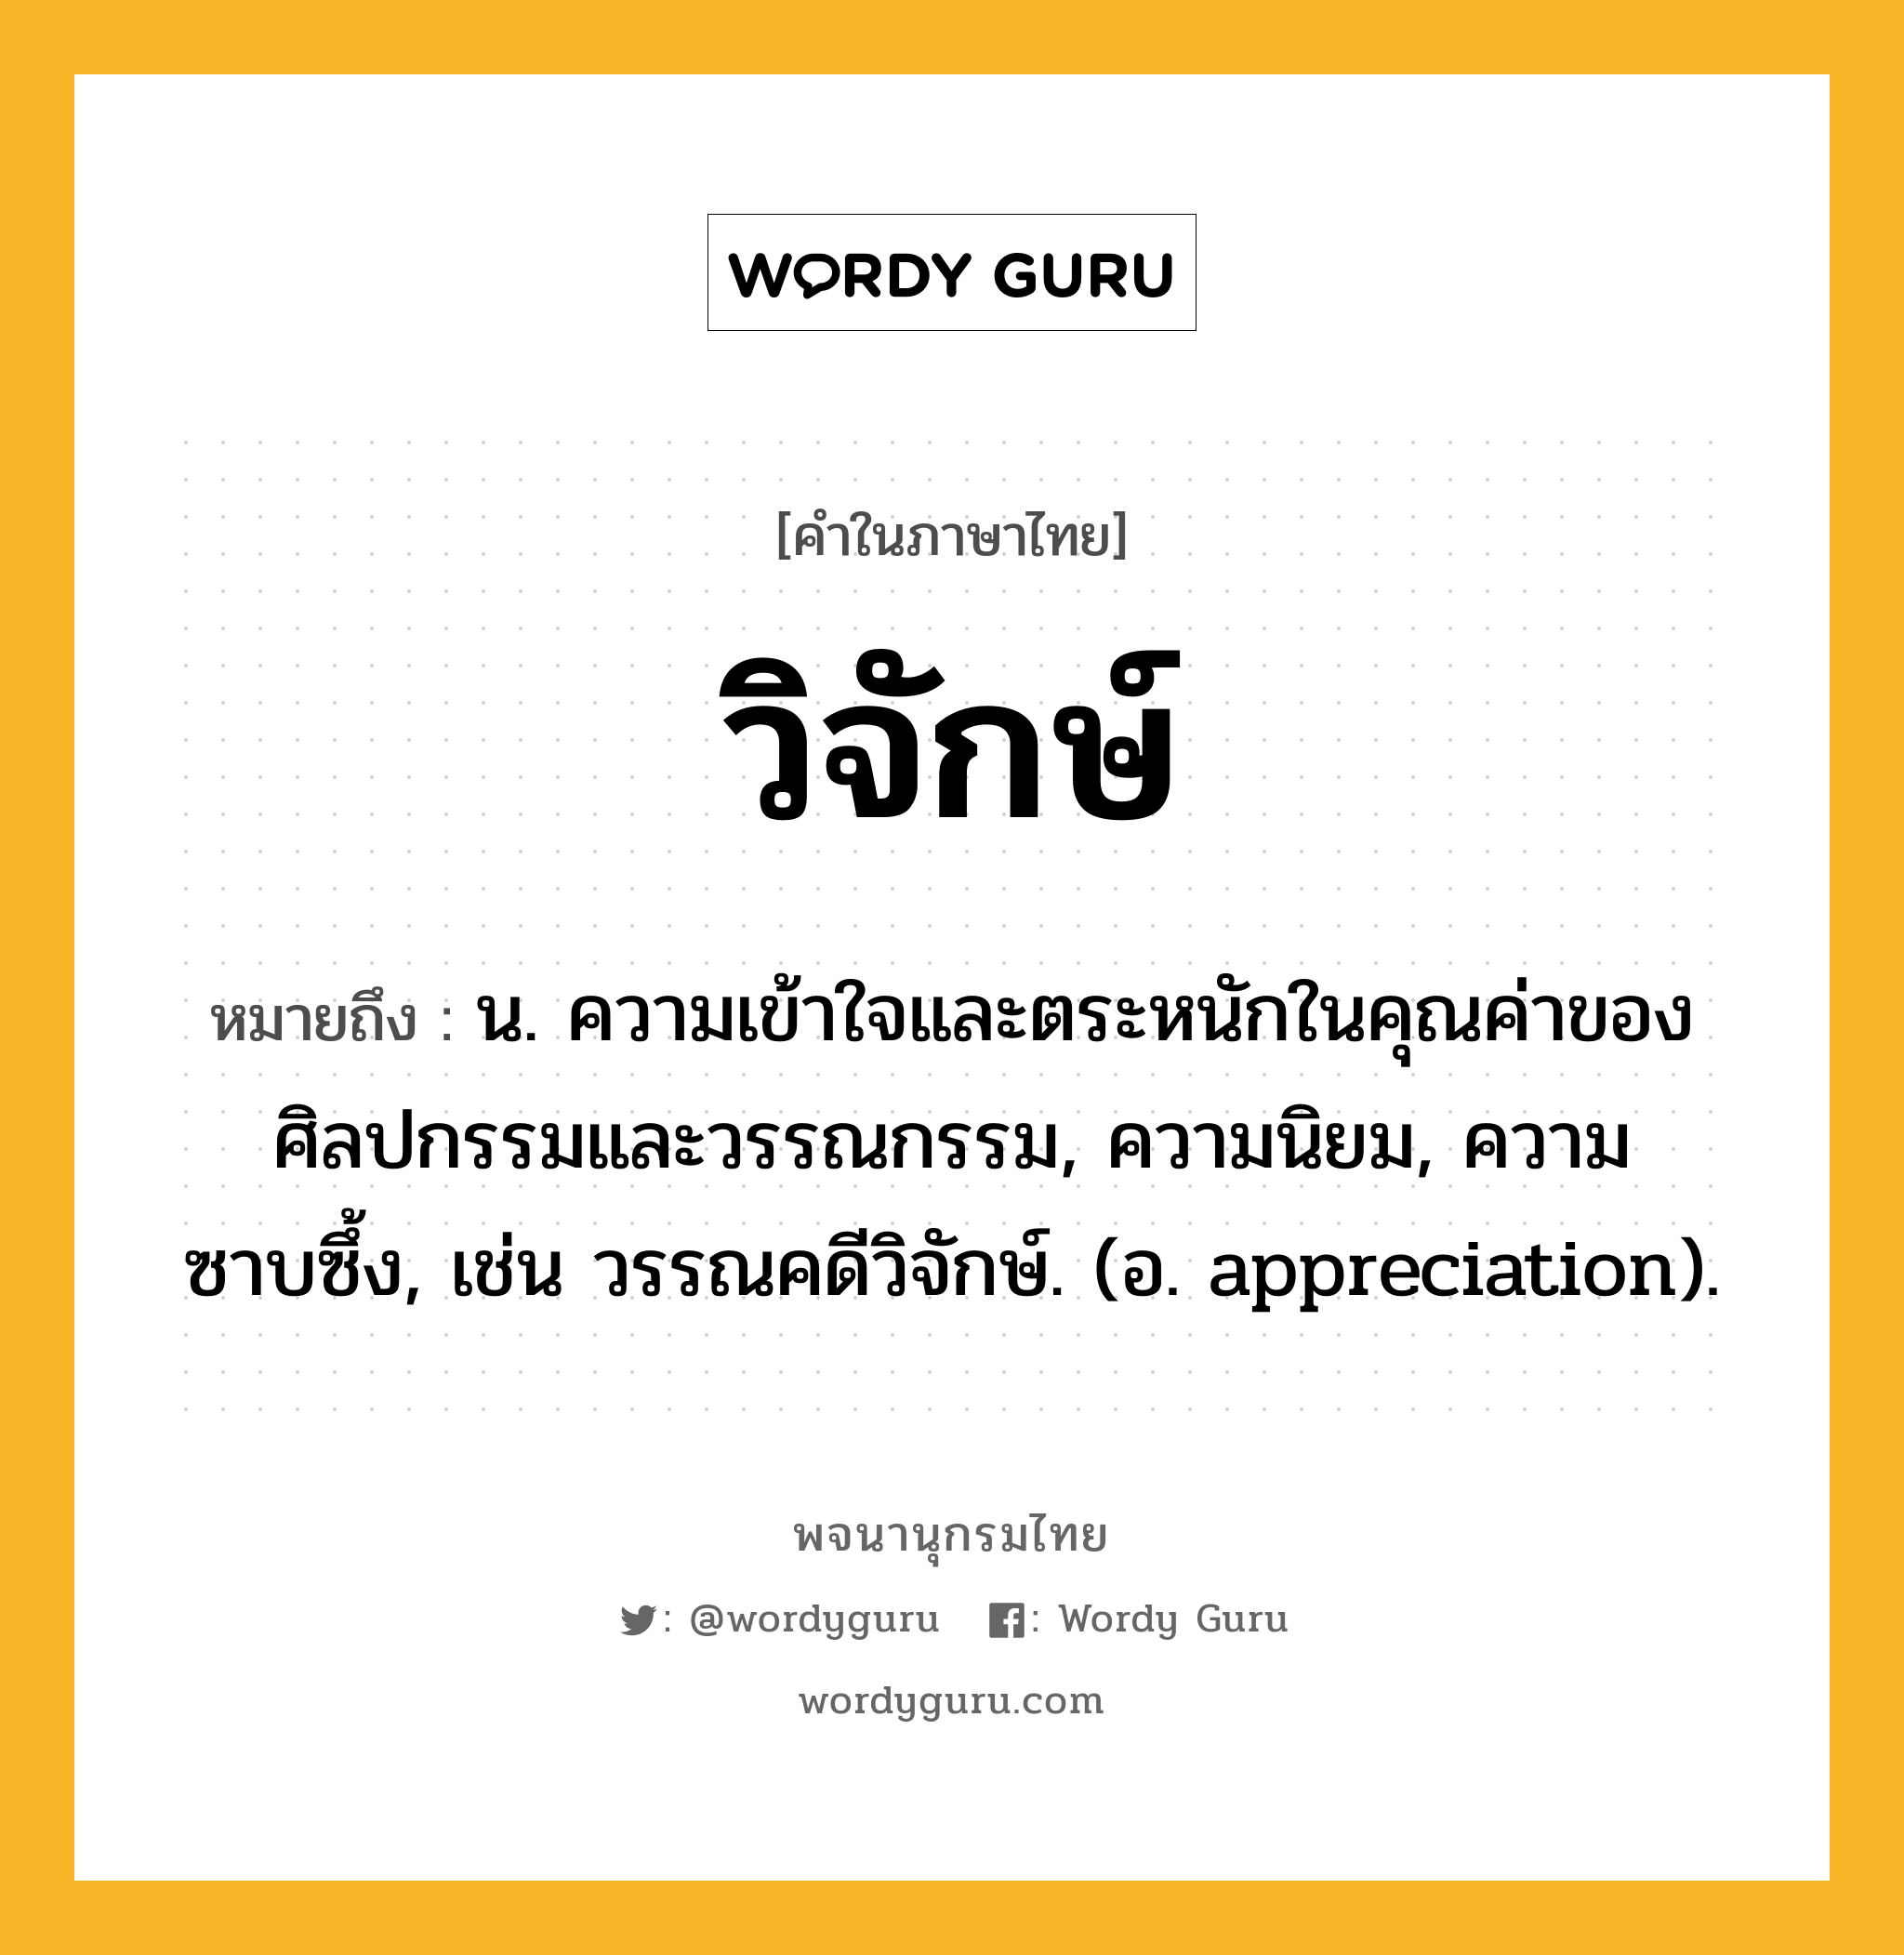 วิจักษ์ ความหมาย หมายถึงอะไร?, คำในภาษาไทย วิจักษ์ หมายถึง น. ความเข้าใจและตระหนักในคุณค่าของศิลปกรรมและวรรณกรรม, ความนิยม, ความซาบซึ้ง, เช่น วรรณคดีวิจักษ์. (อ. appreciation).